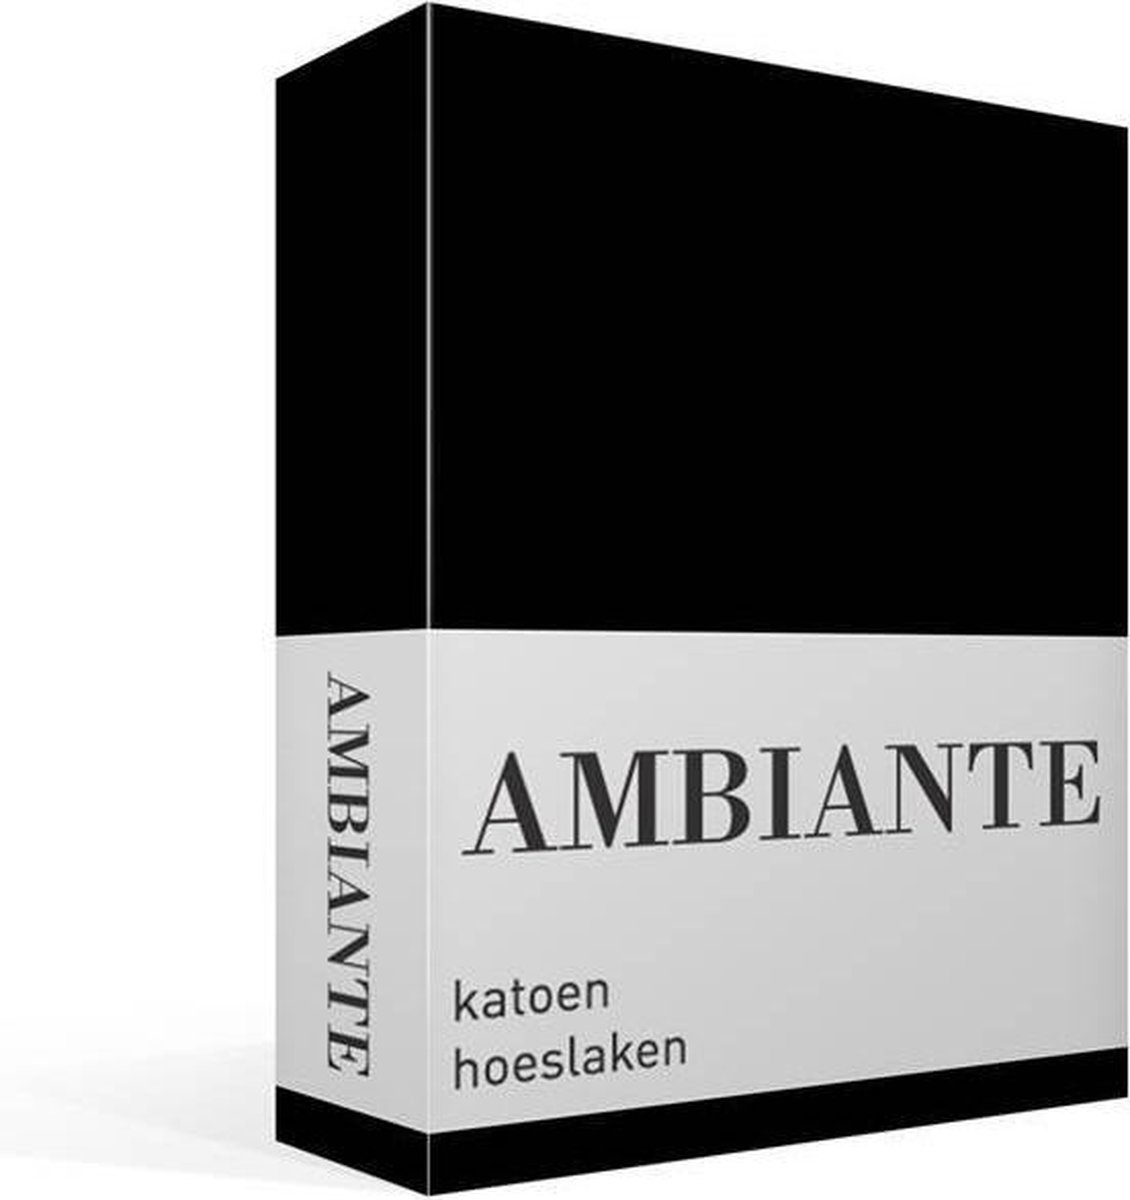 AMBIANTE Cotton Uni Hoeslaken - 100% Katoen - 1-persoons (70x200 Cm) - Black - Zwart